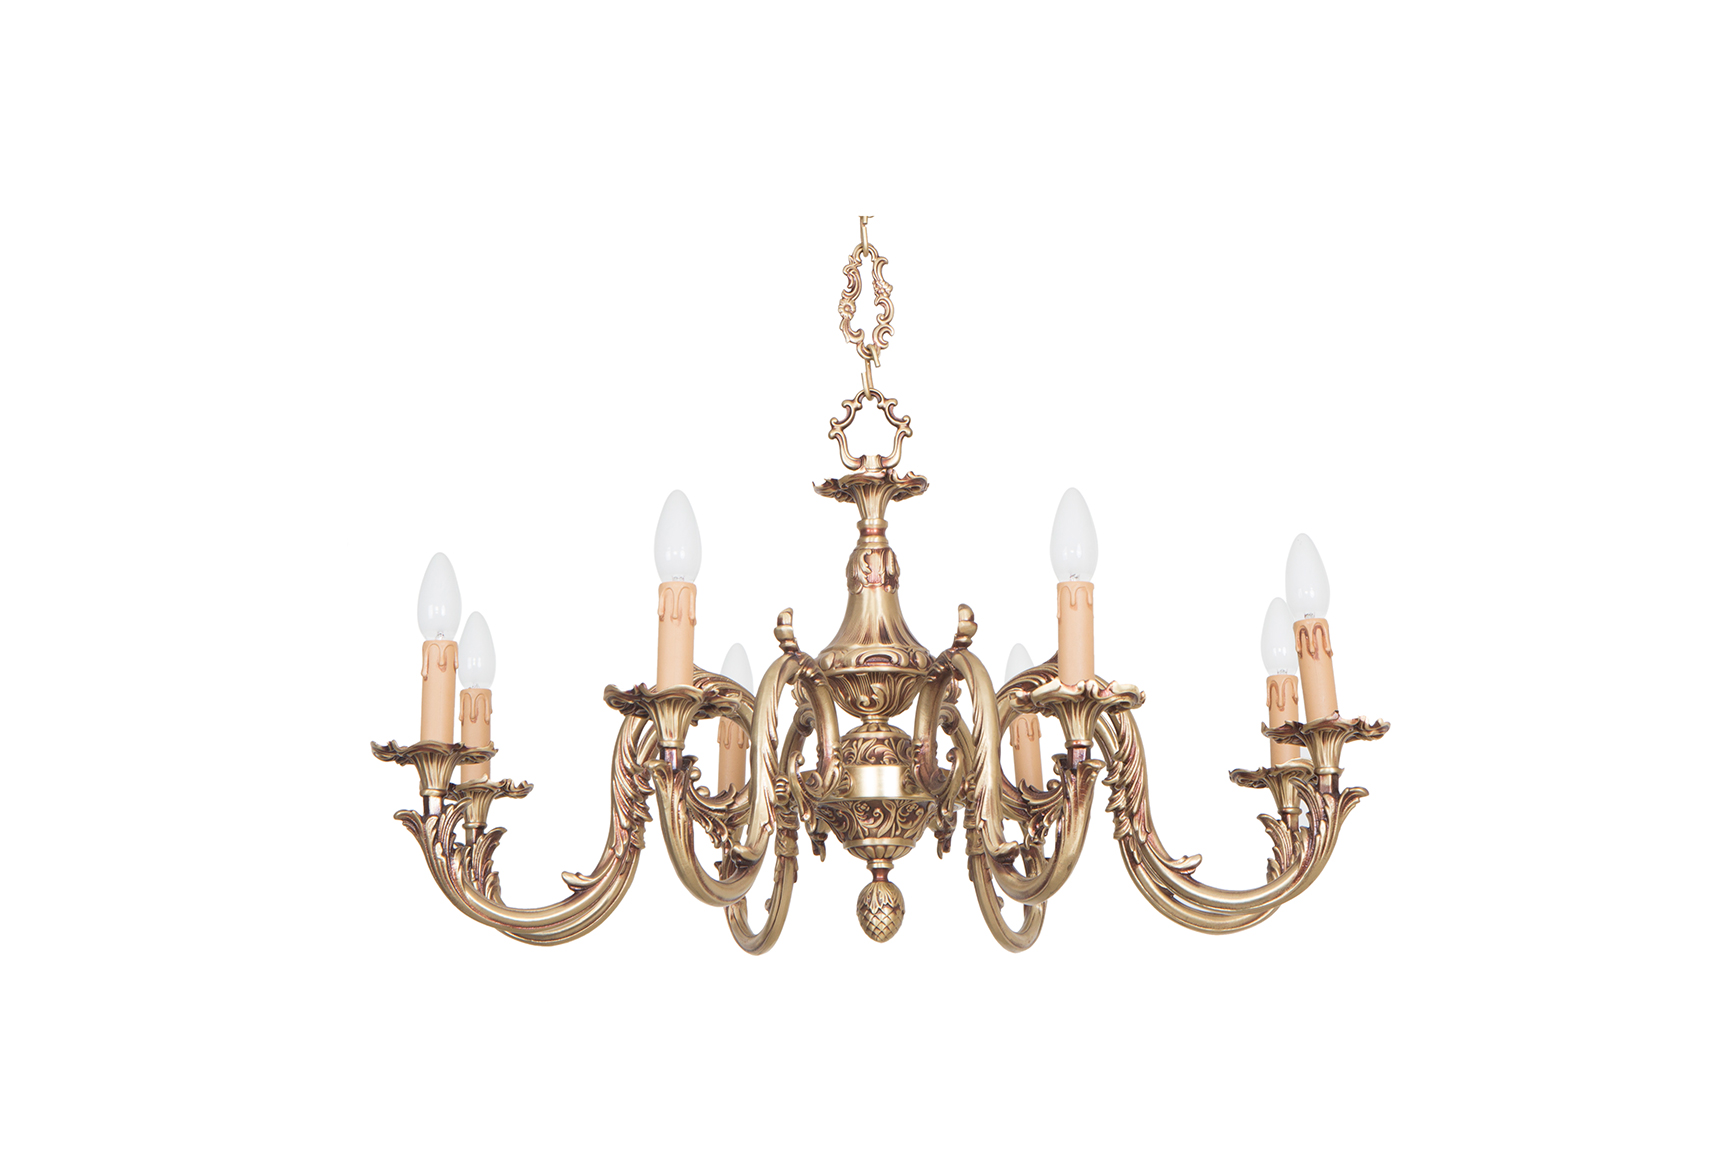 Luxury Crystal & Brass Chandelier Manufacturer : Antique